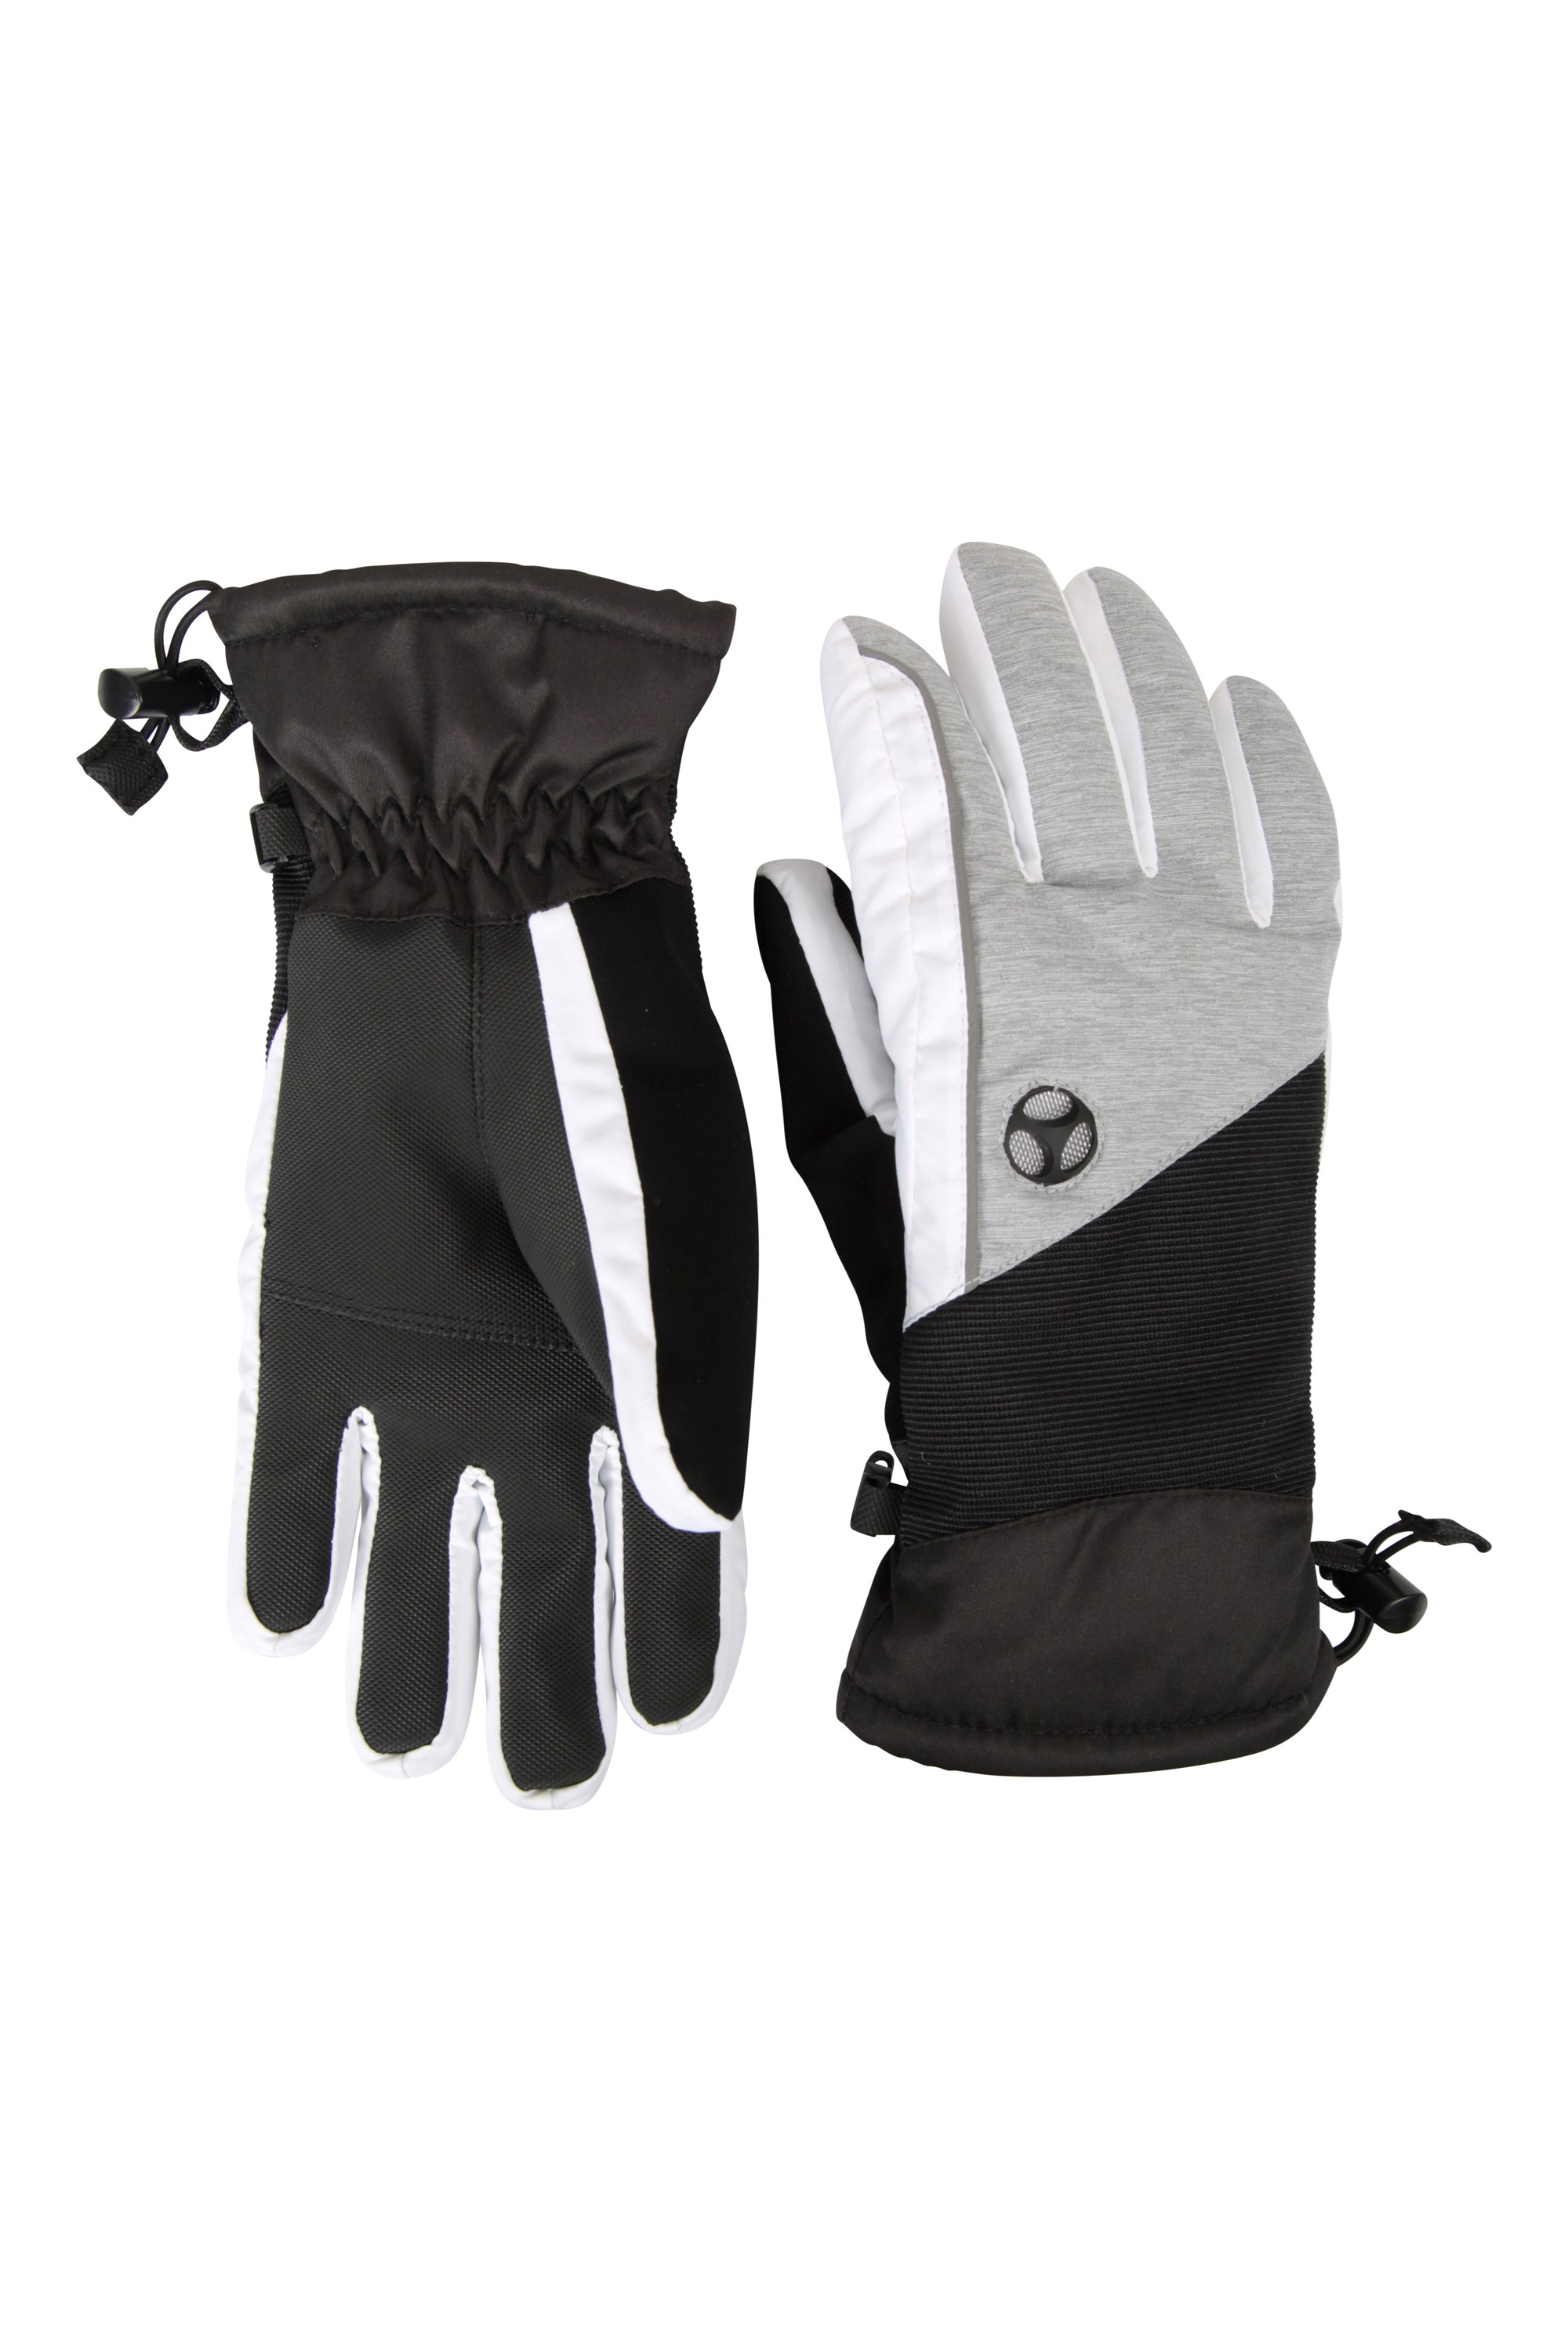 Slalom Womens Ski Gloves - Grey